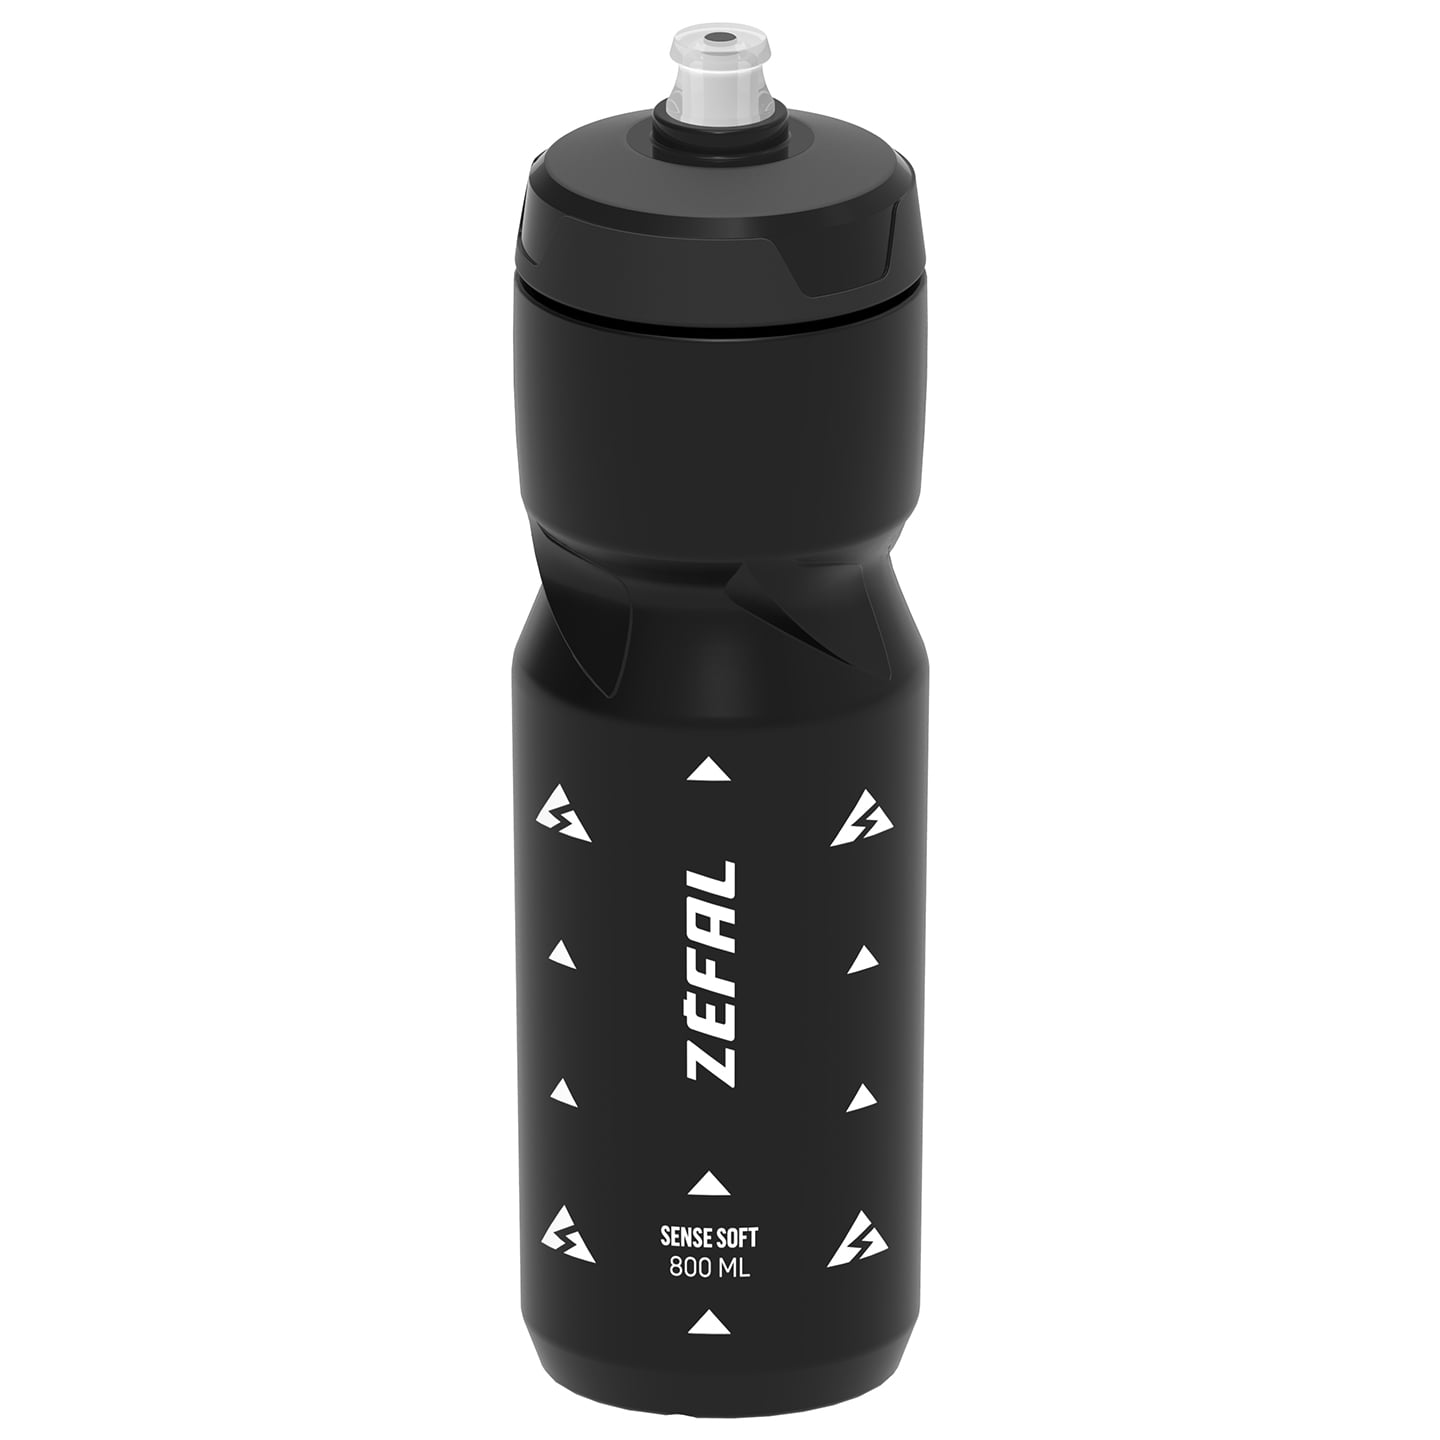 ZEFAL Sense Soft 800 ml Bottle Water Bottle, Bike bottle, Bike accessories